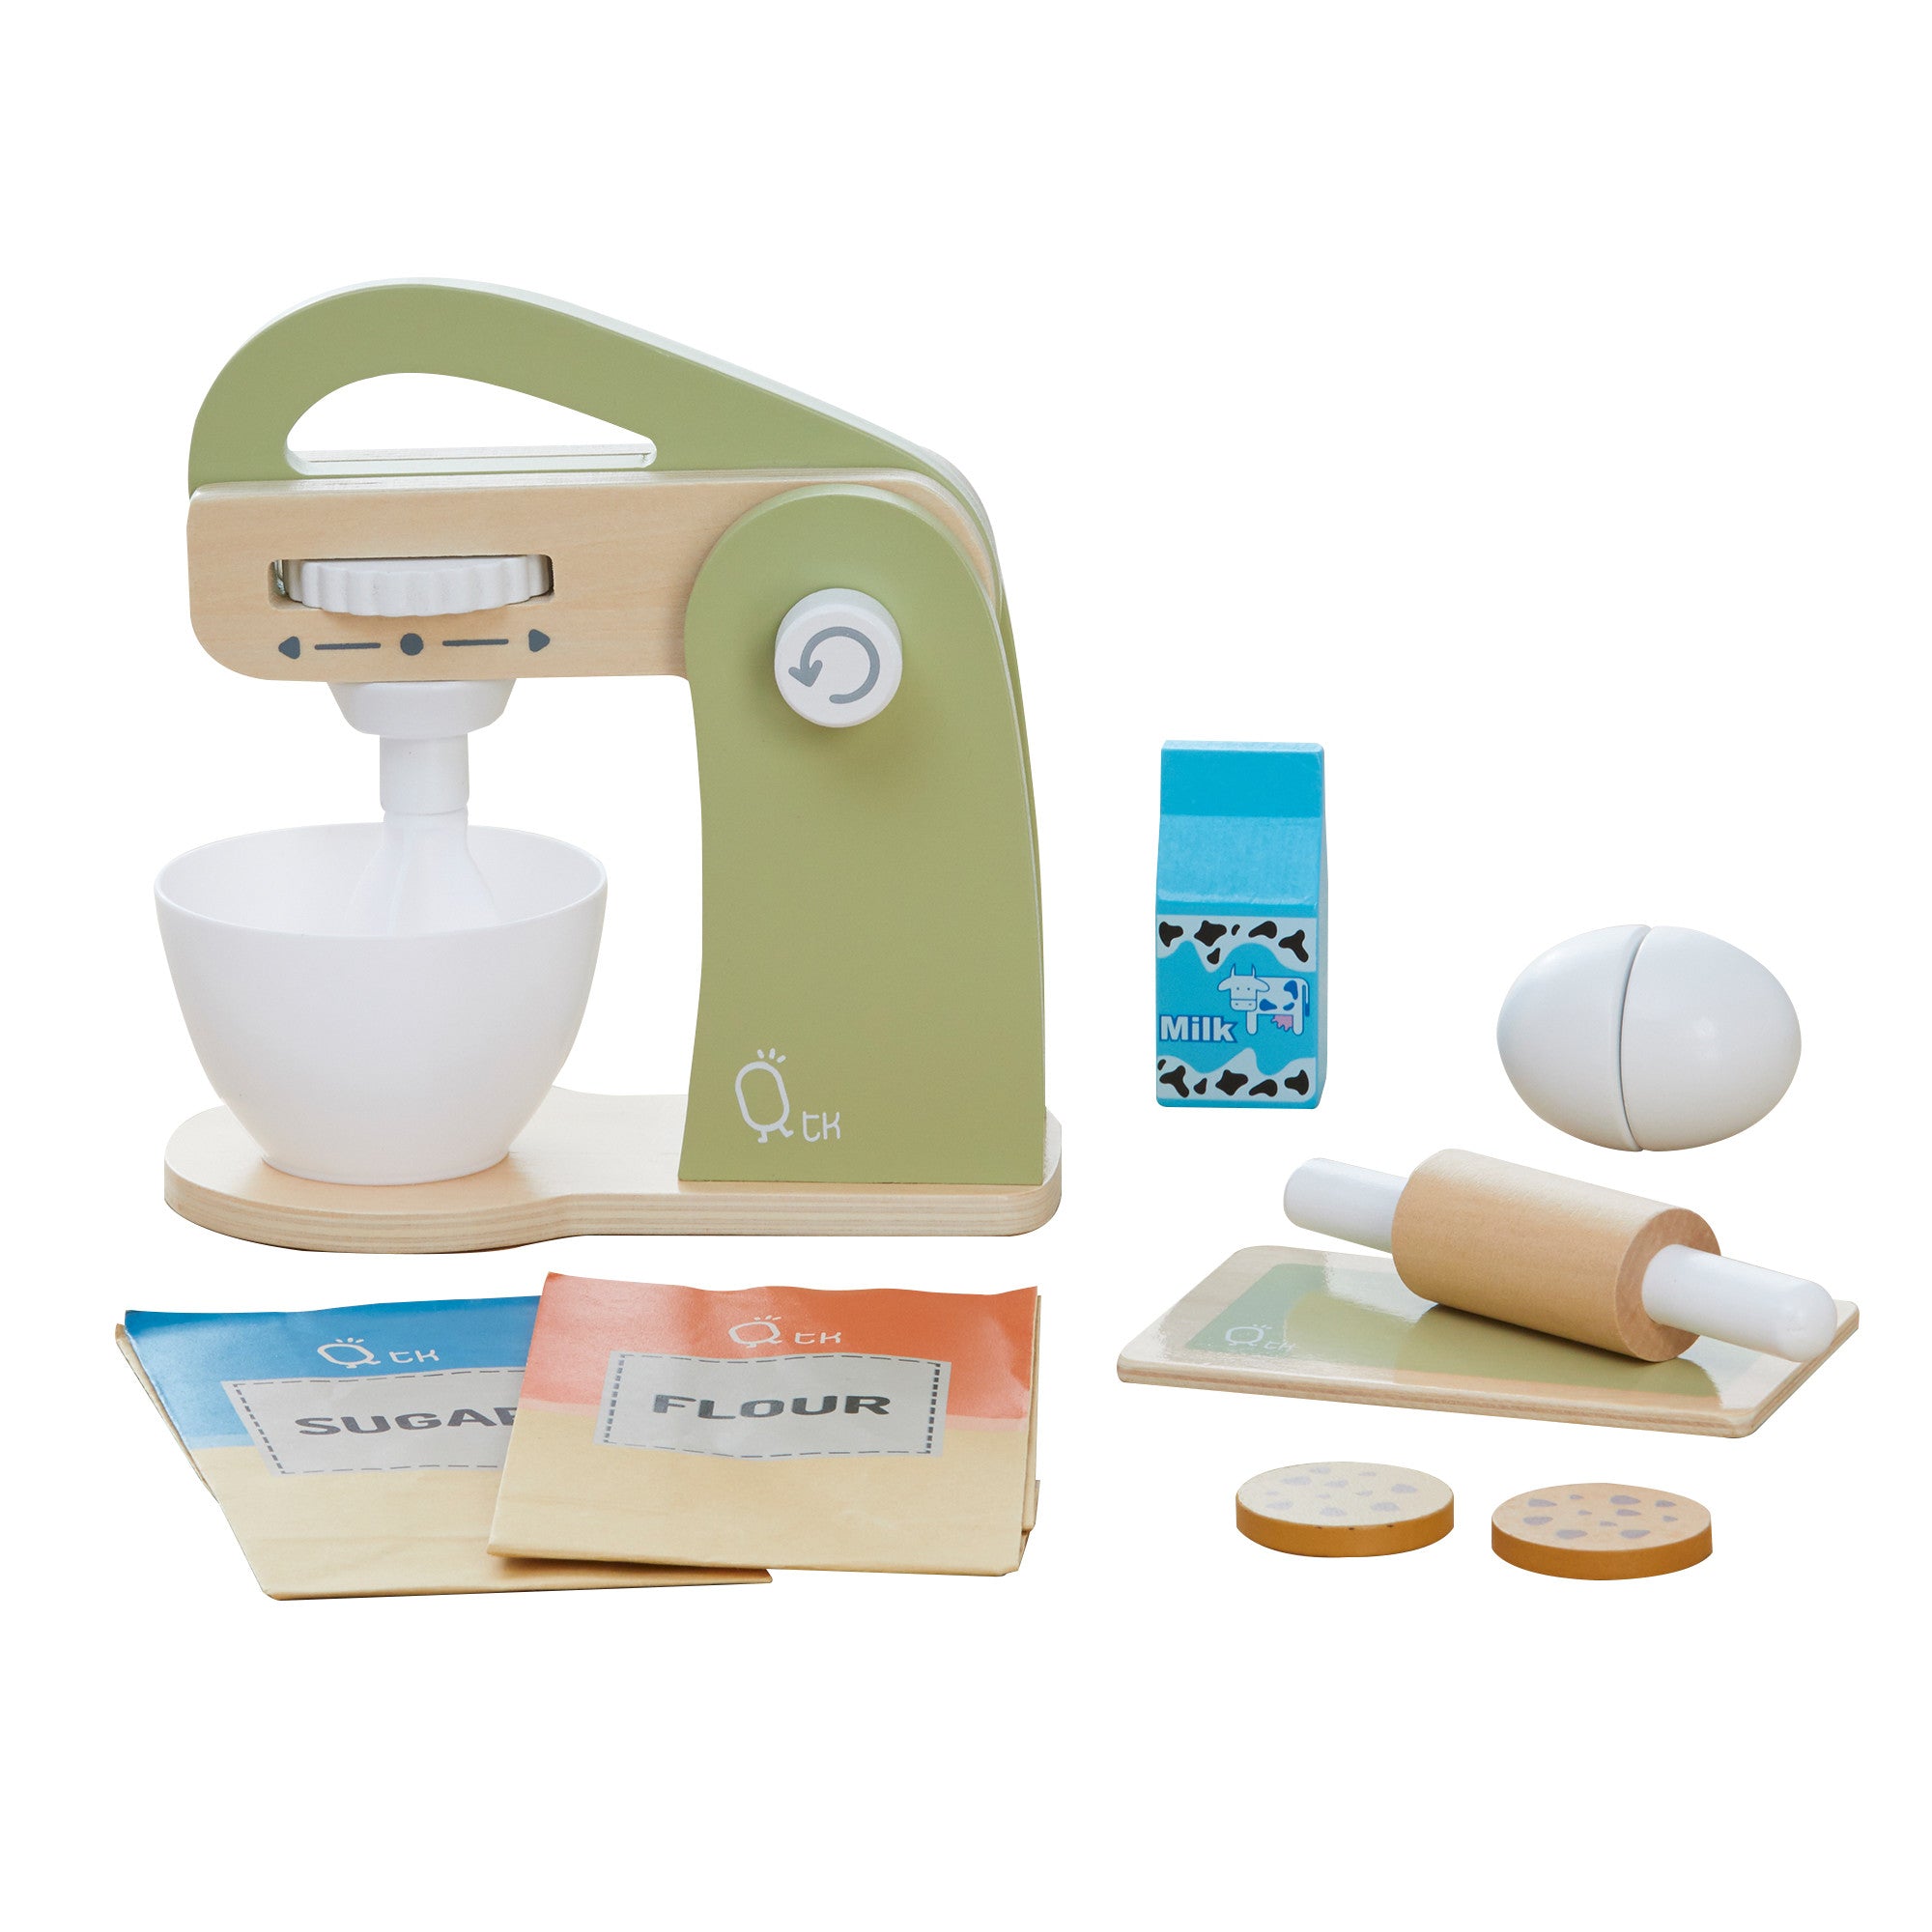 Teamson Kids - Little Chef Frankfurt Wooden Toaster Play Kitchen Accessories, Green